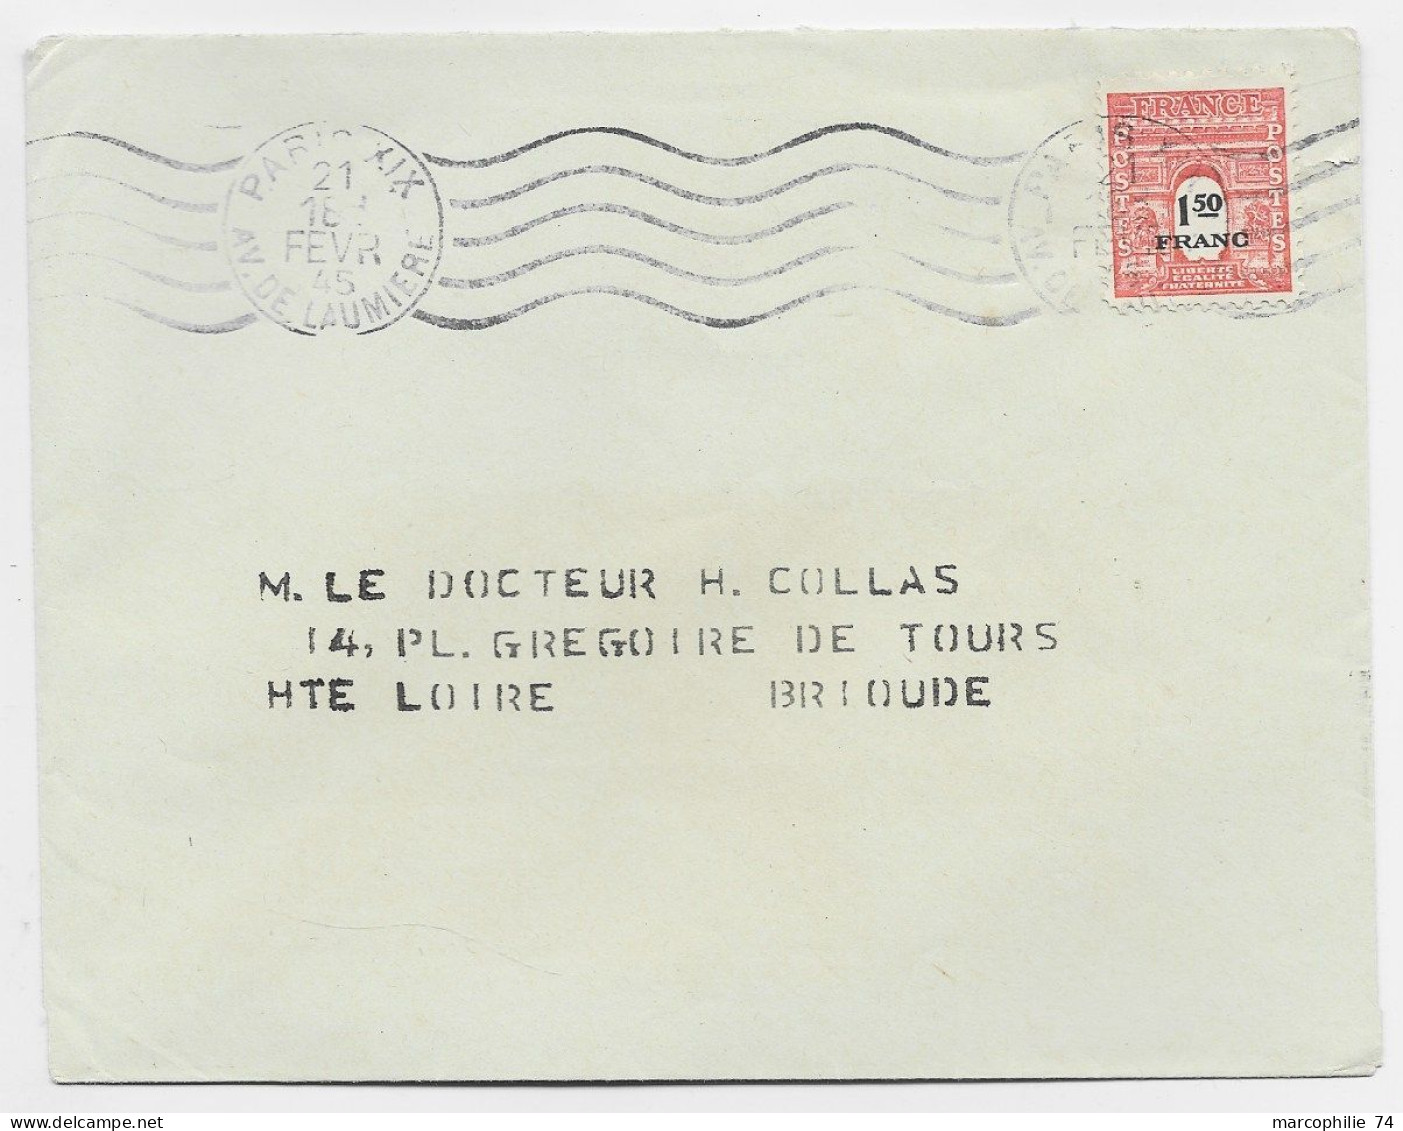 FRANCE ARC TRIOMPHE 1FR50 SEUL LETTRE MEC PARIS XII 21 FEVR 1945 USAGE COURT 17 JOURS - 1944-45 Arc Of Triomphe